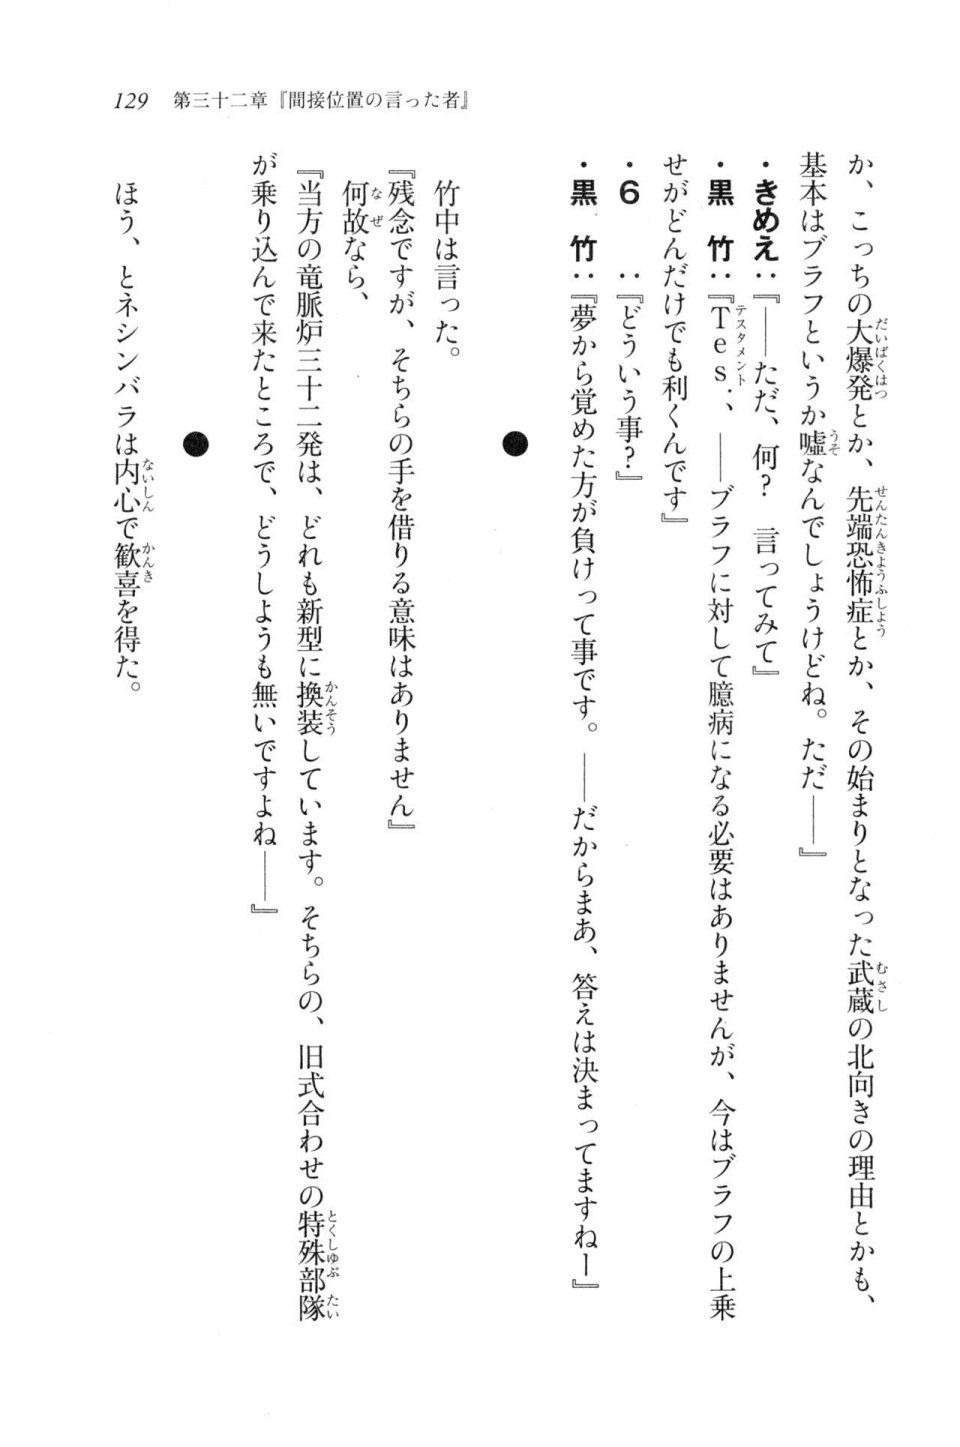 Kyoukai Senjou no Horizon LN Vol 20(8B) - Photo #129